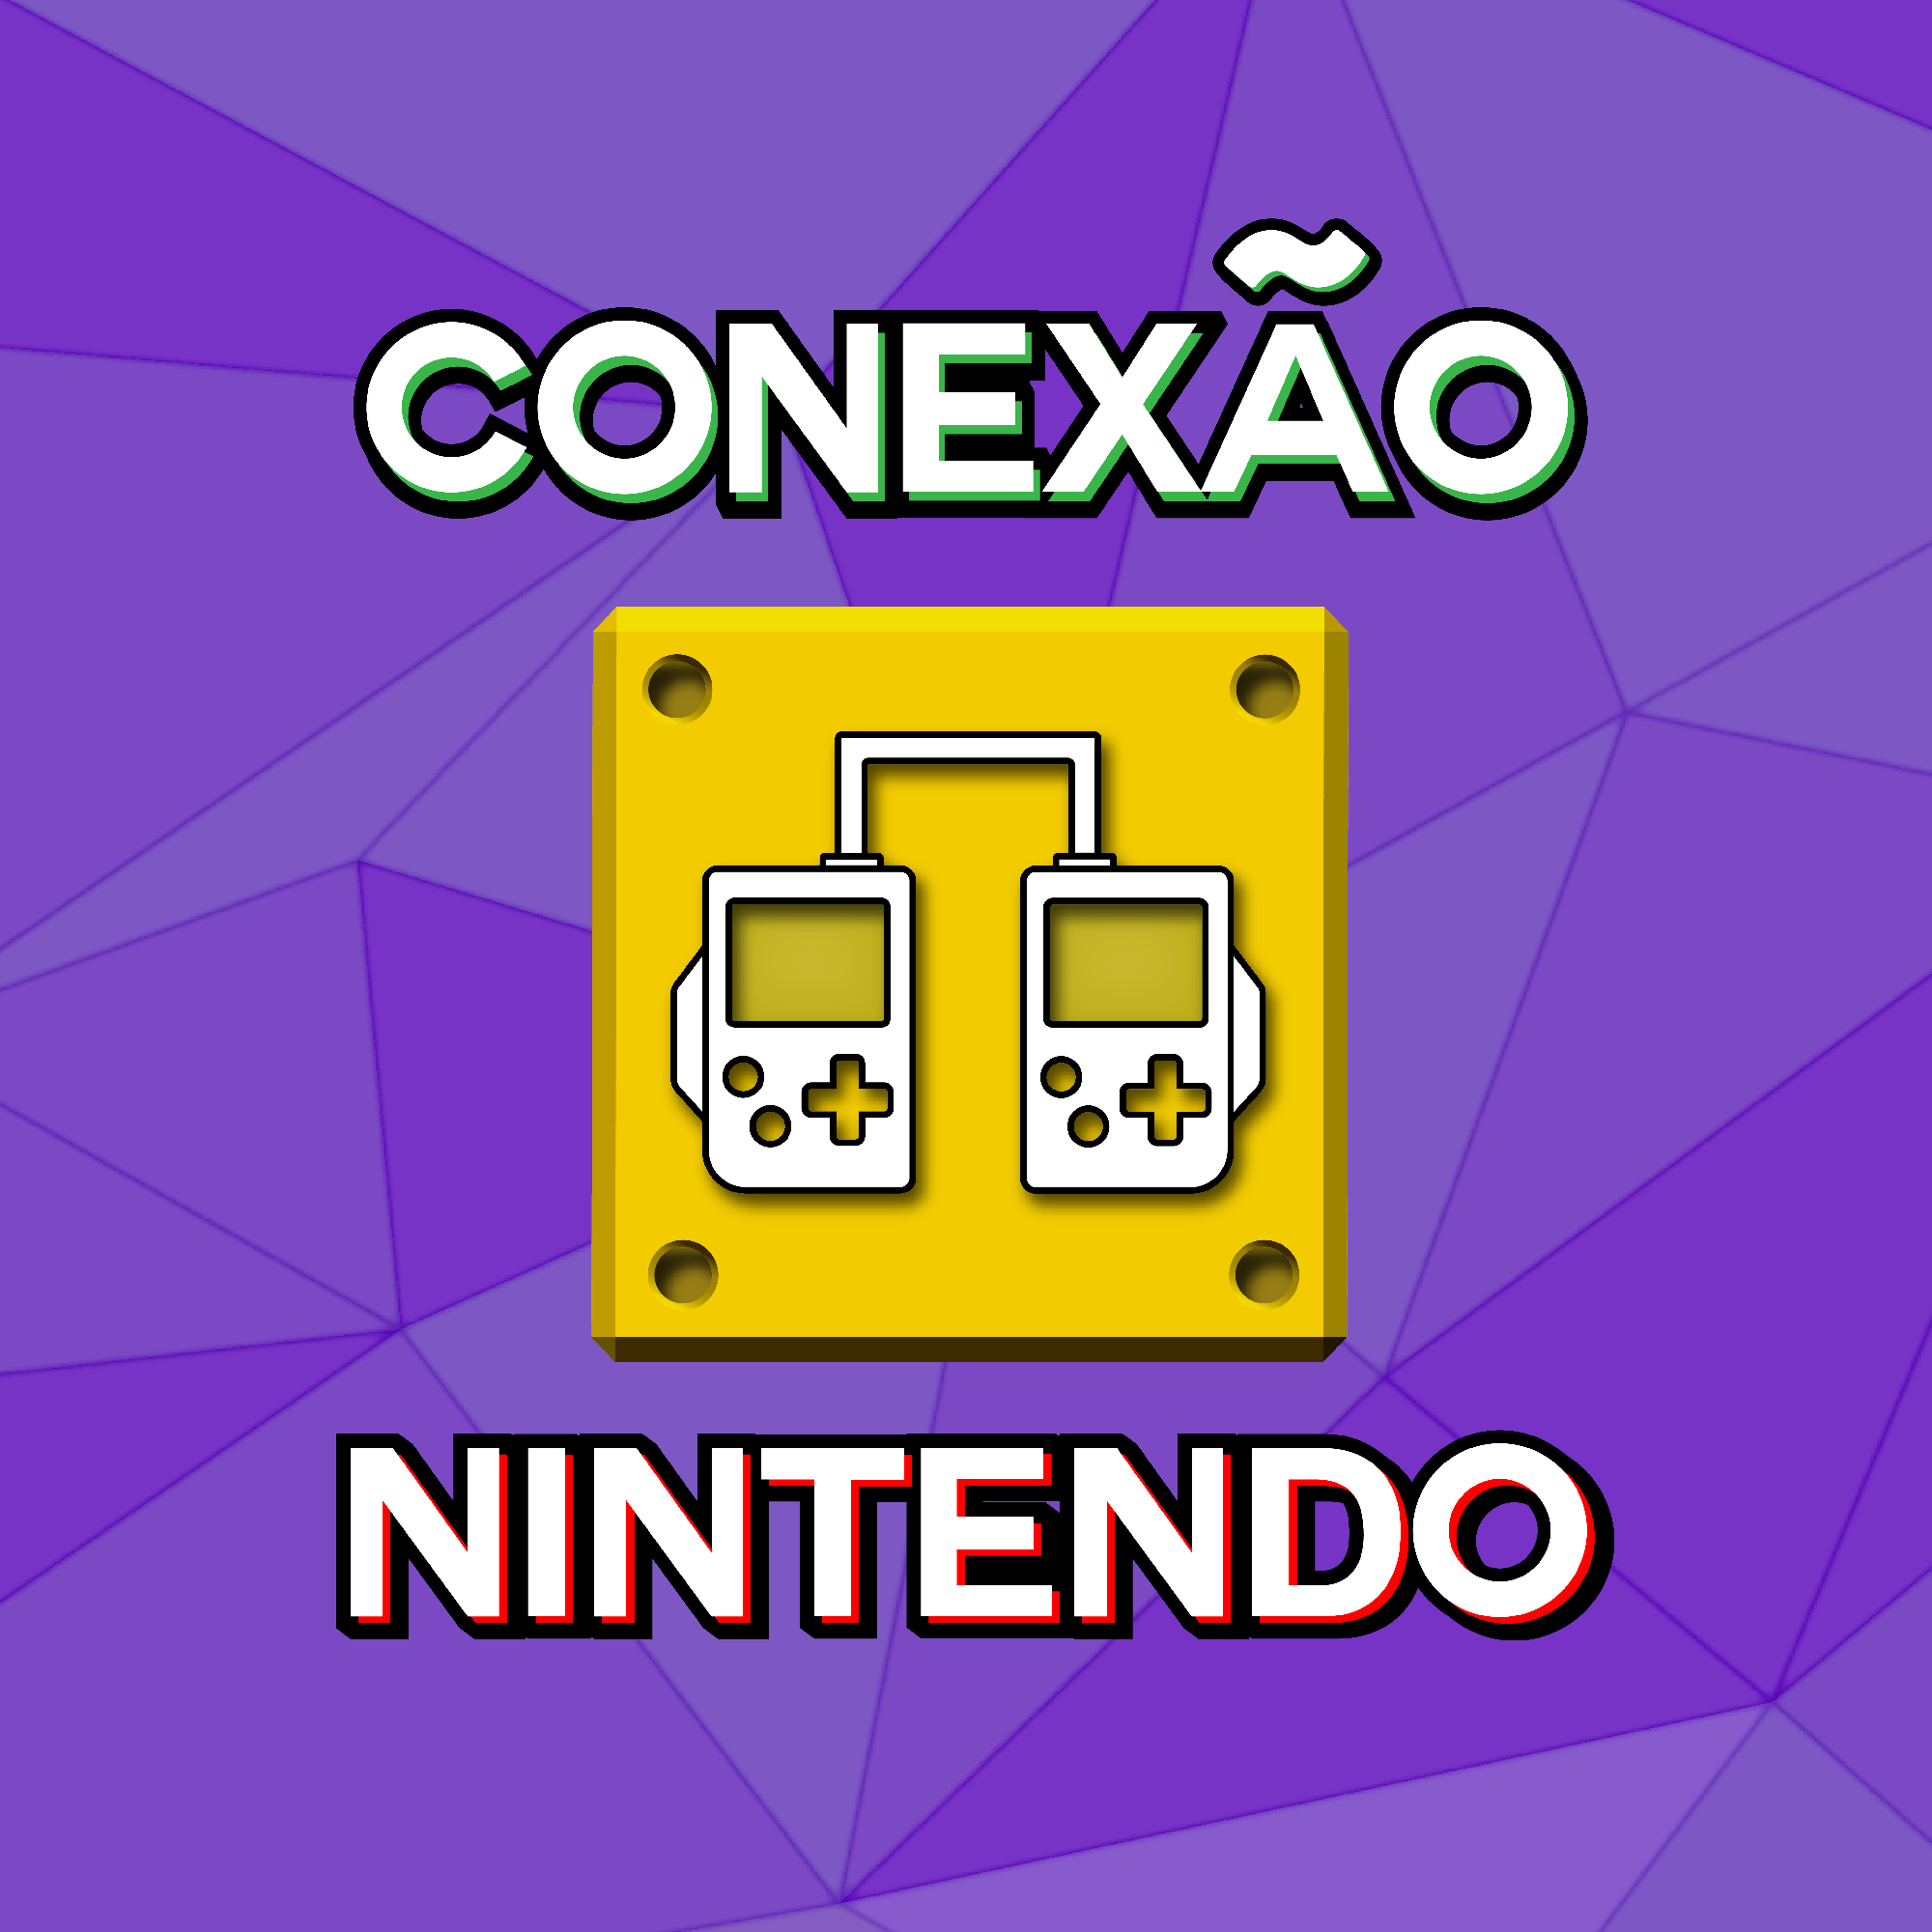  Conexão Nintendo #10 - Pyra, Mythra e Bravely Default II